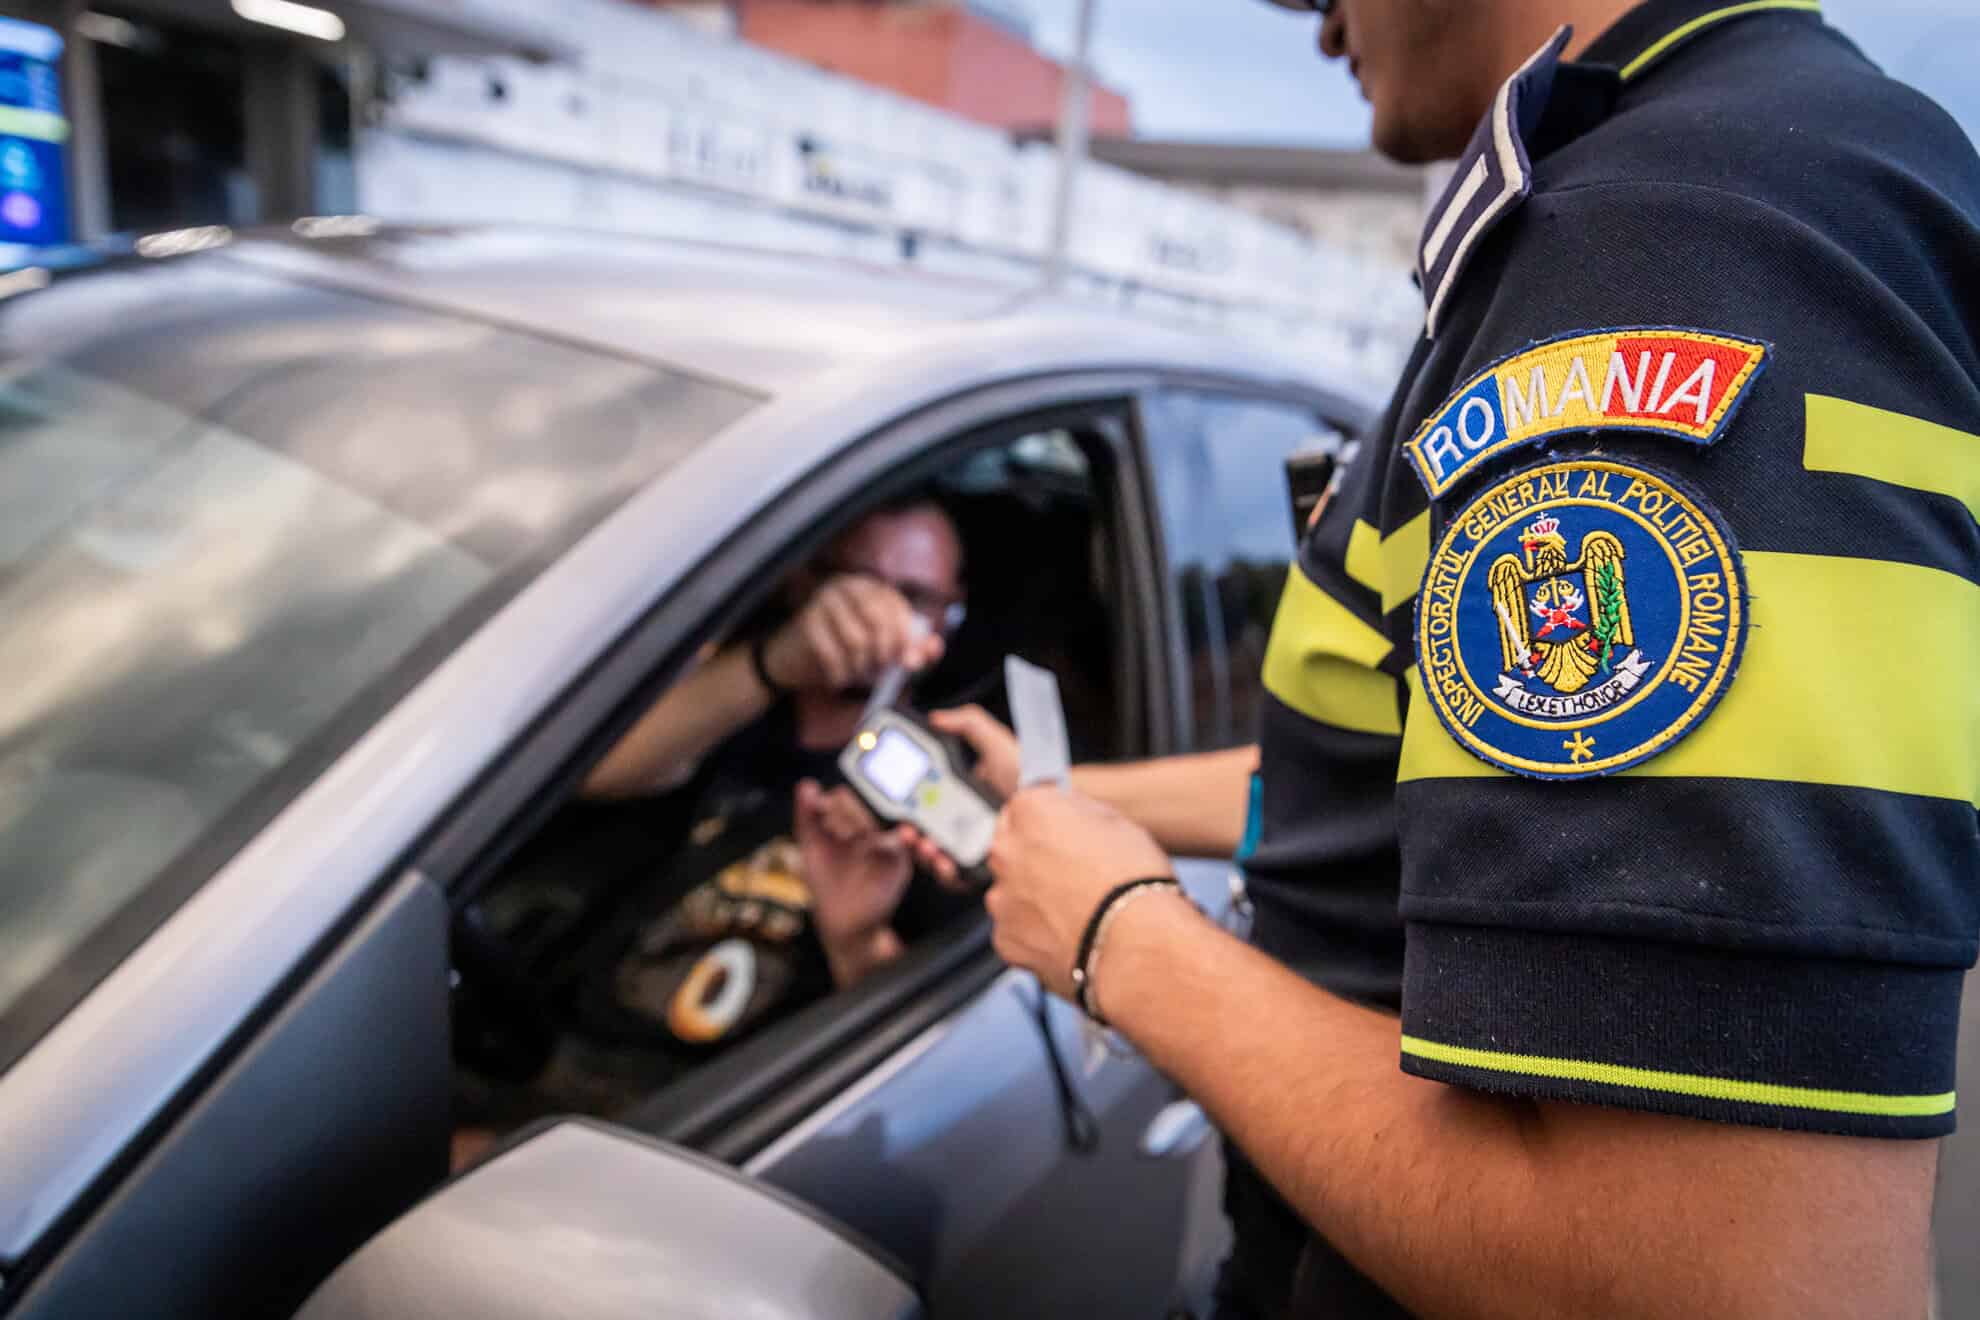 ipj sibiu explică procedura de restituire a permiselor de conducere în cazul în care ieșiți pozitiv la testul anti-drog (video, foto)